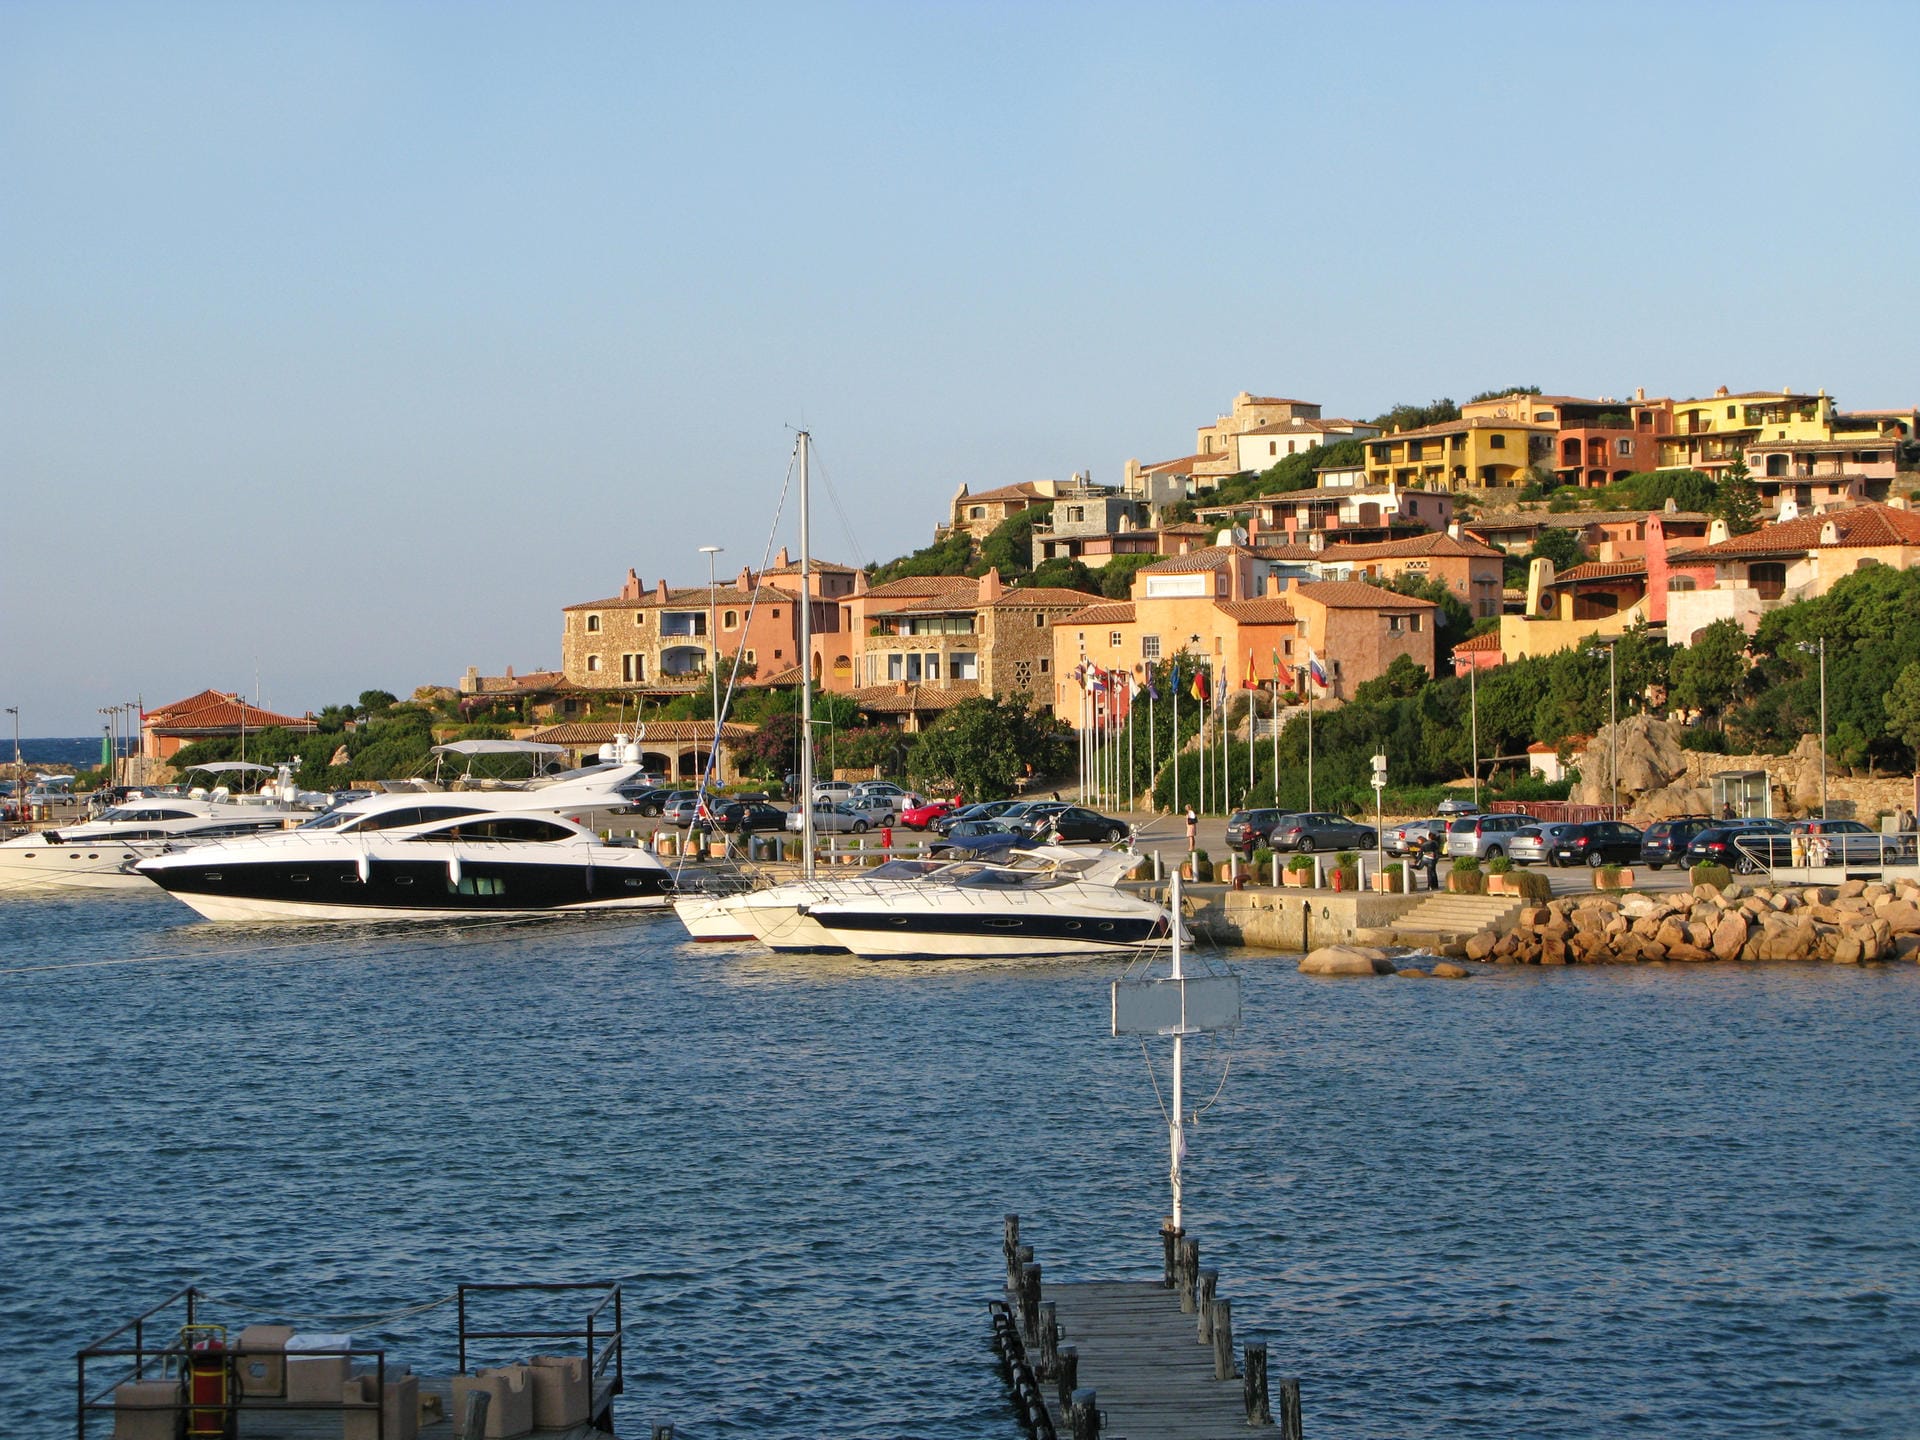 Hier kann man's aushalten: Porto Cervo auf Sardinien zieht Luxusjacht-Besitzer und Prominente an. Für rund 2800 Euro darf die 60-Meter-Jacht in dieser Marina anlegen – wenn es einen freien Platz gibt.